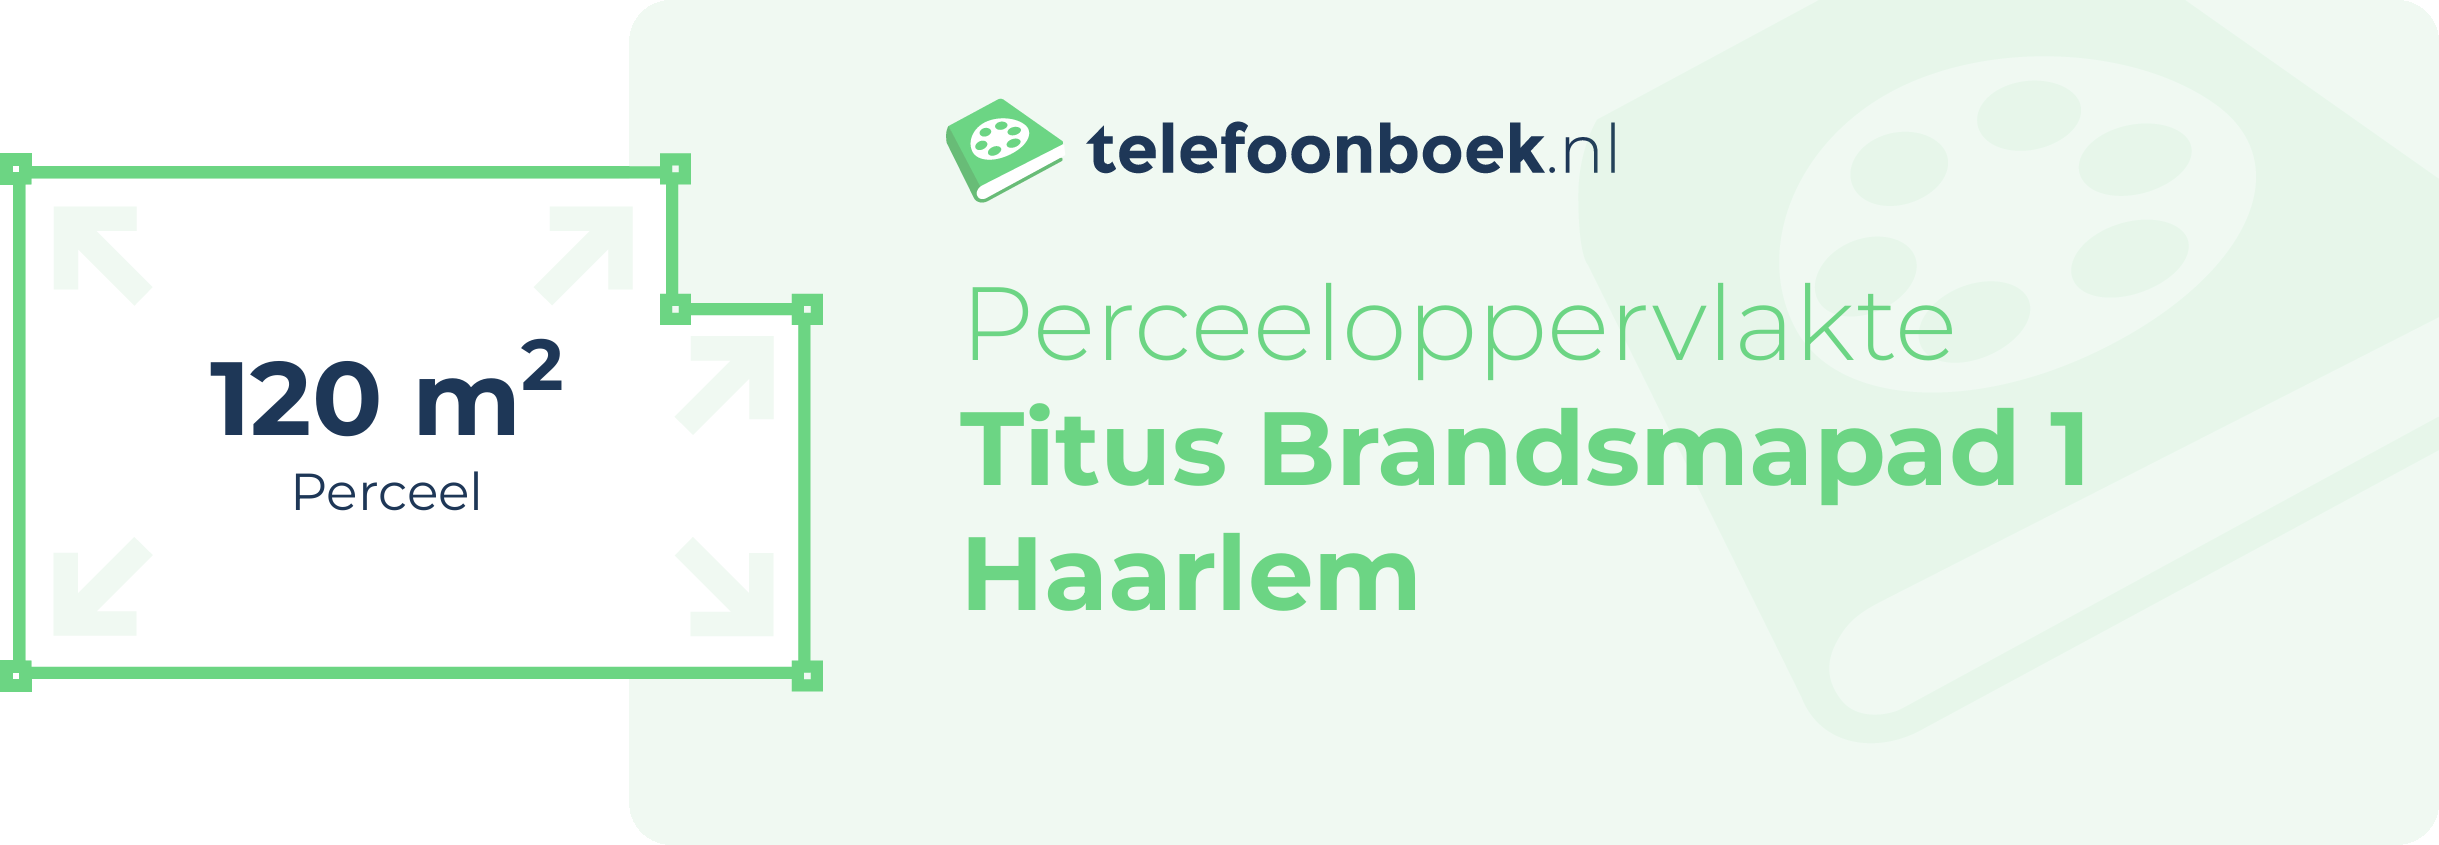 Perceeloppervlakte Titus Brandsmapad 1 Haarlem